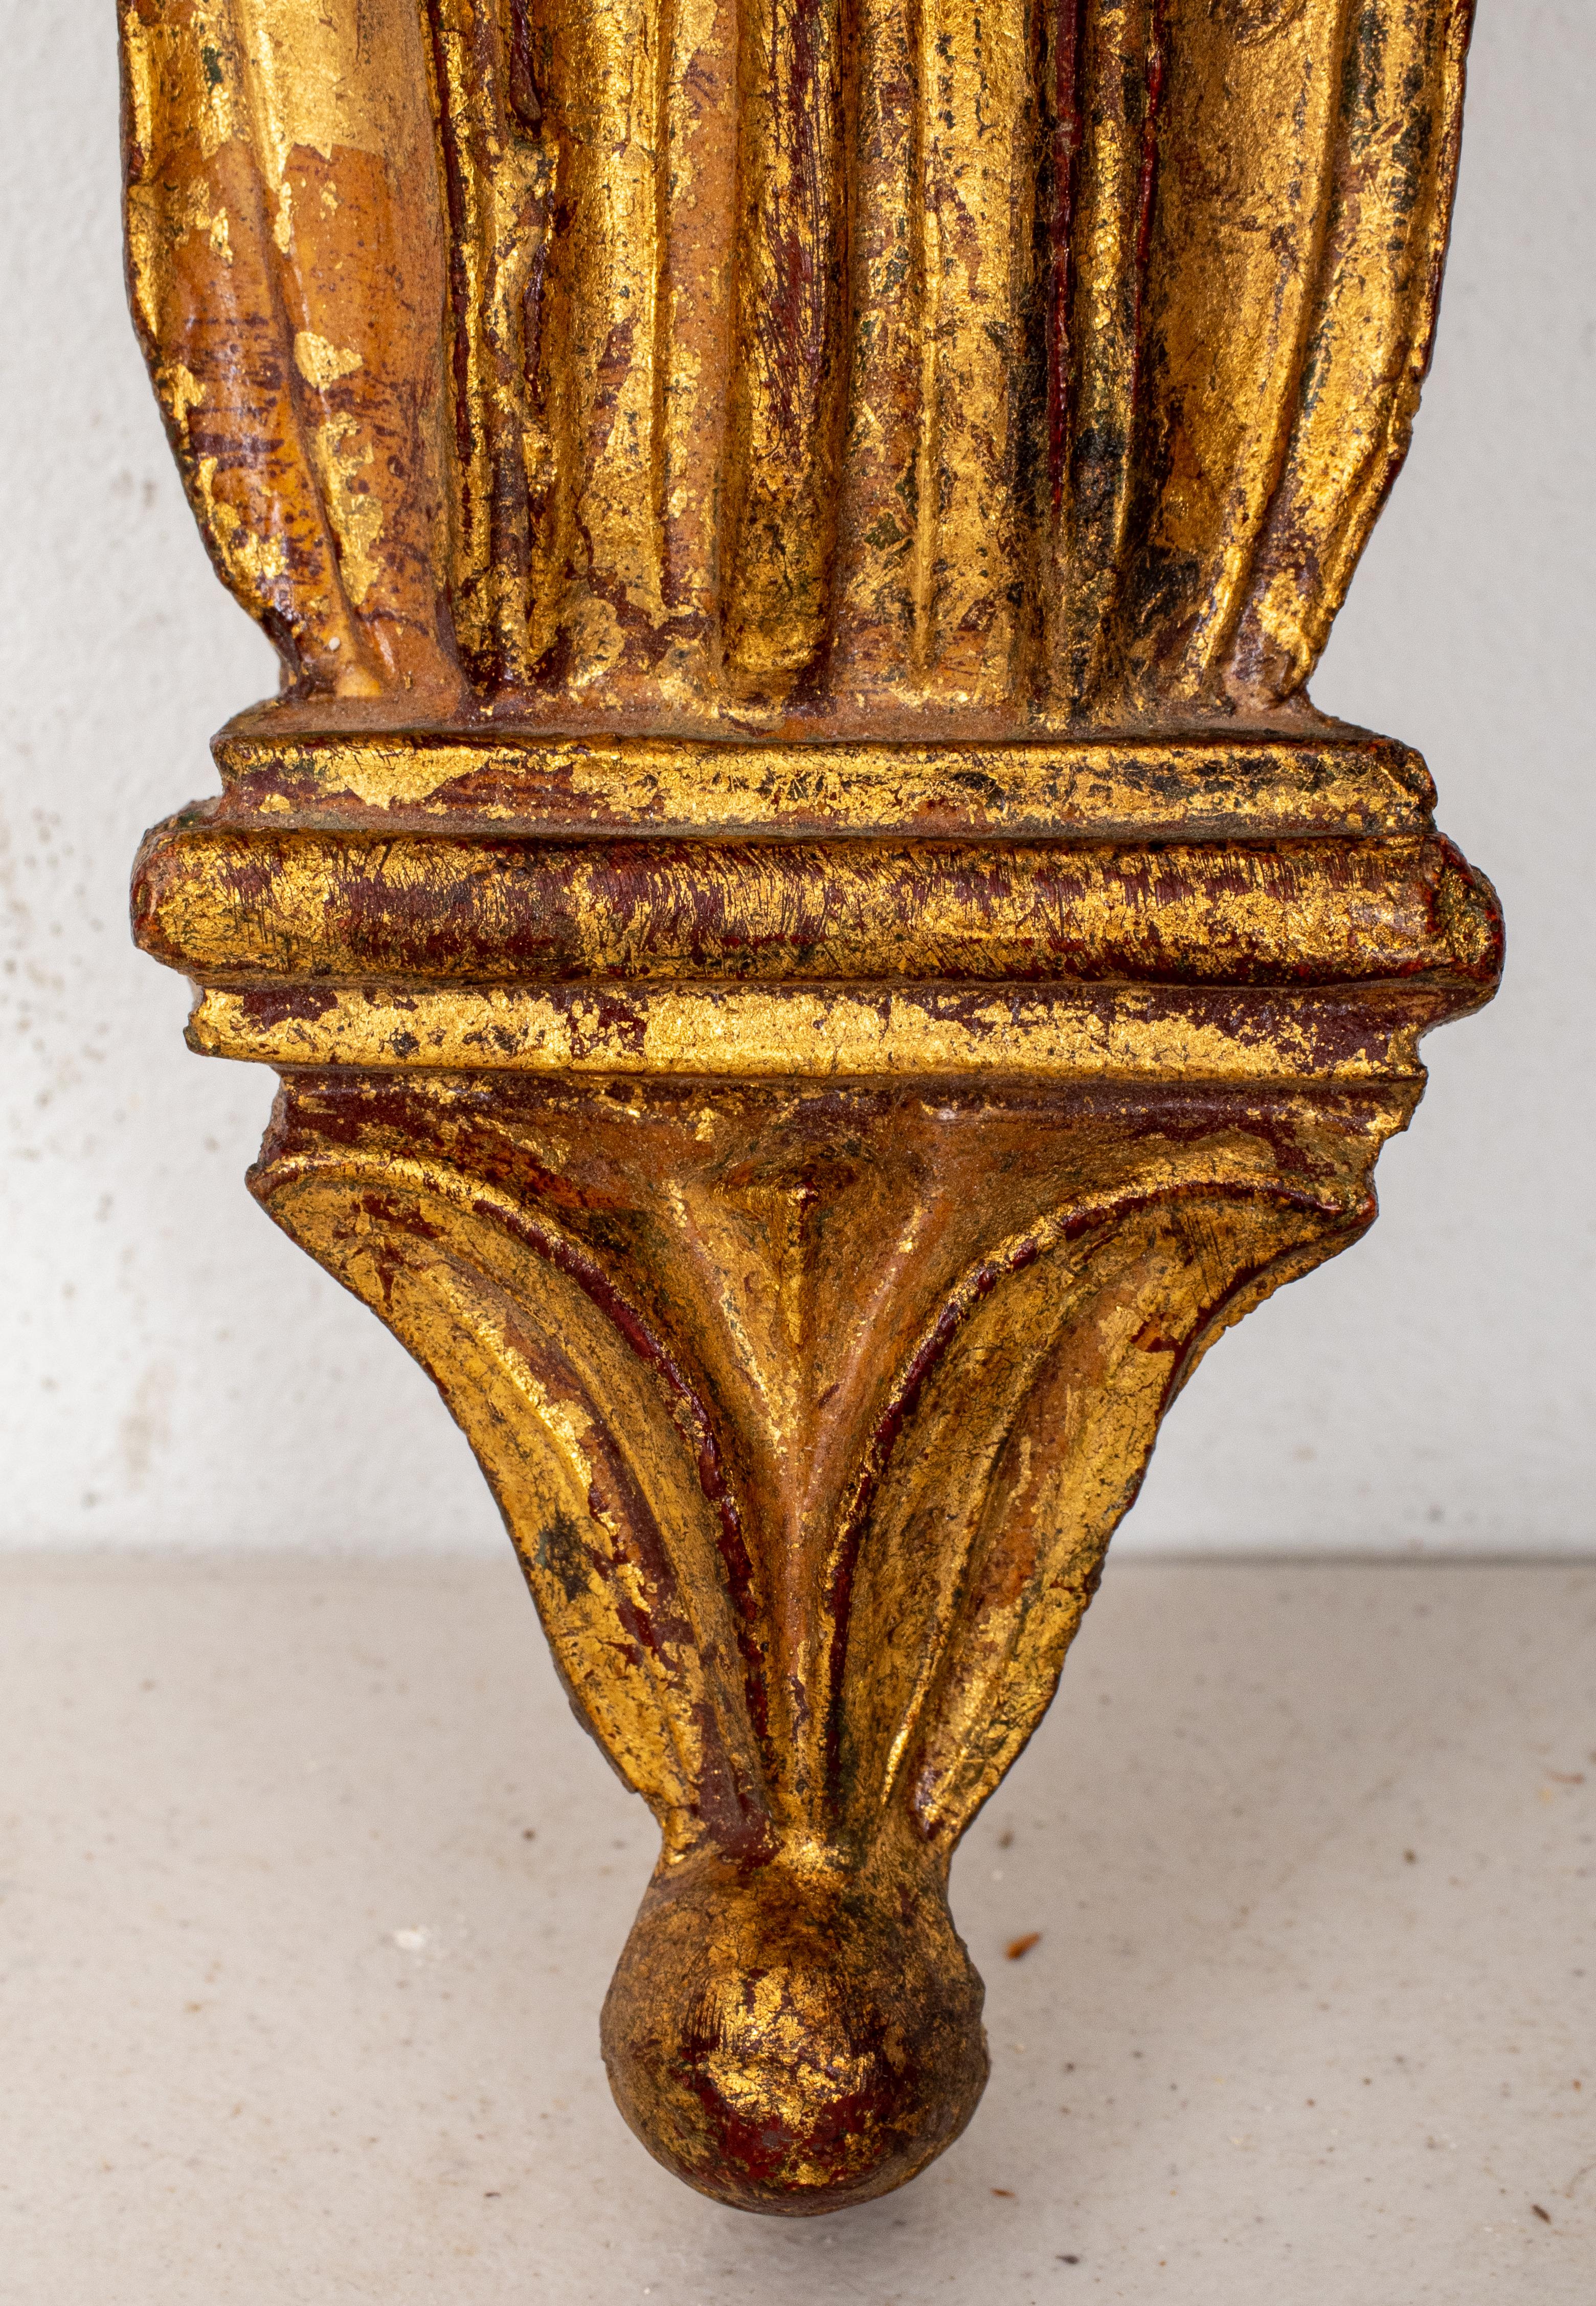 Hollywood-Regency-Klammer aus vergoldetem Holz, mit geformter Halterung über einem modifizierten korinthischen Kapitell, der in einem Anhänger endet. 
Maße: H x B x T: 25,4 x 25,4 x 5 cm (10,5 x 10 zoll).